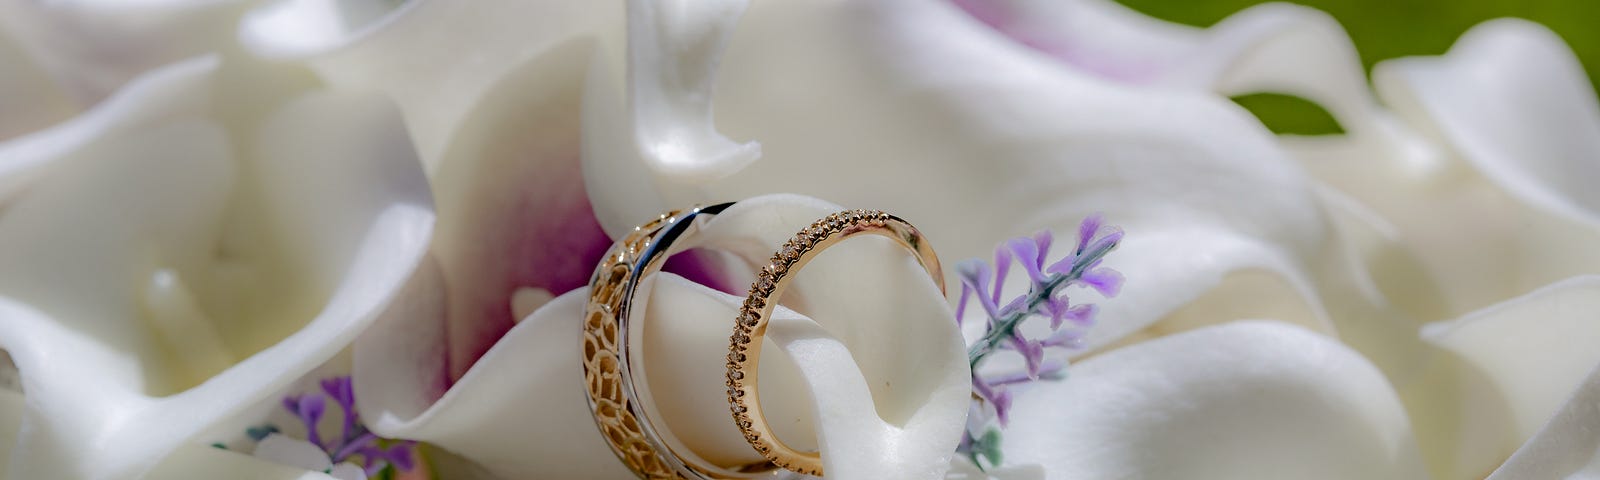 Photo of wedding rings among flowers.